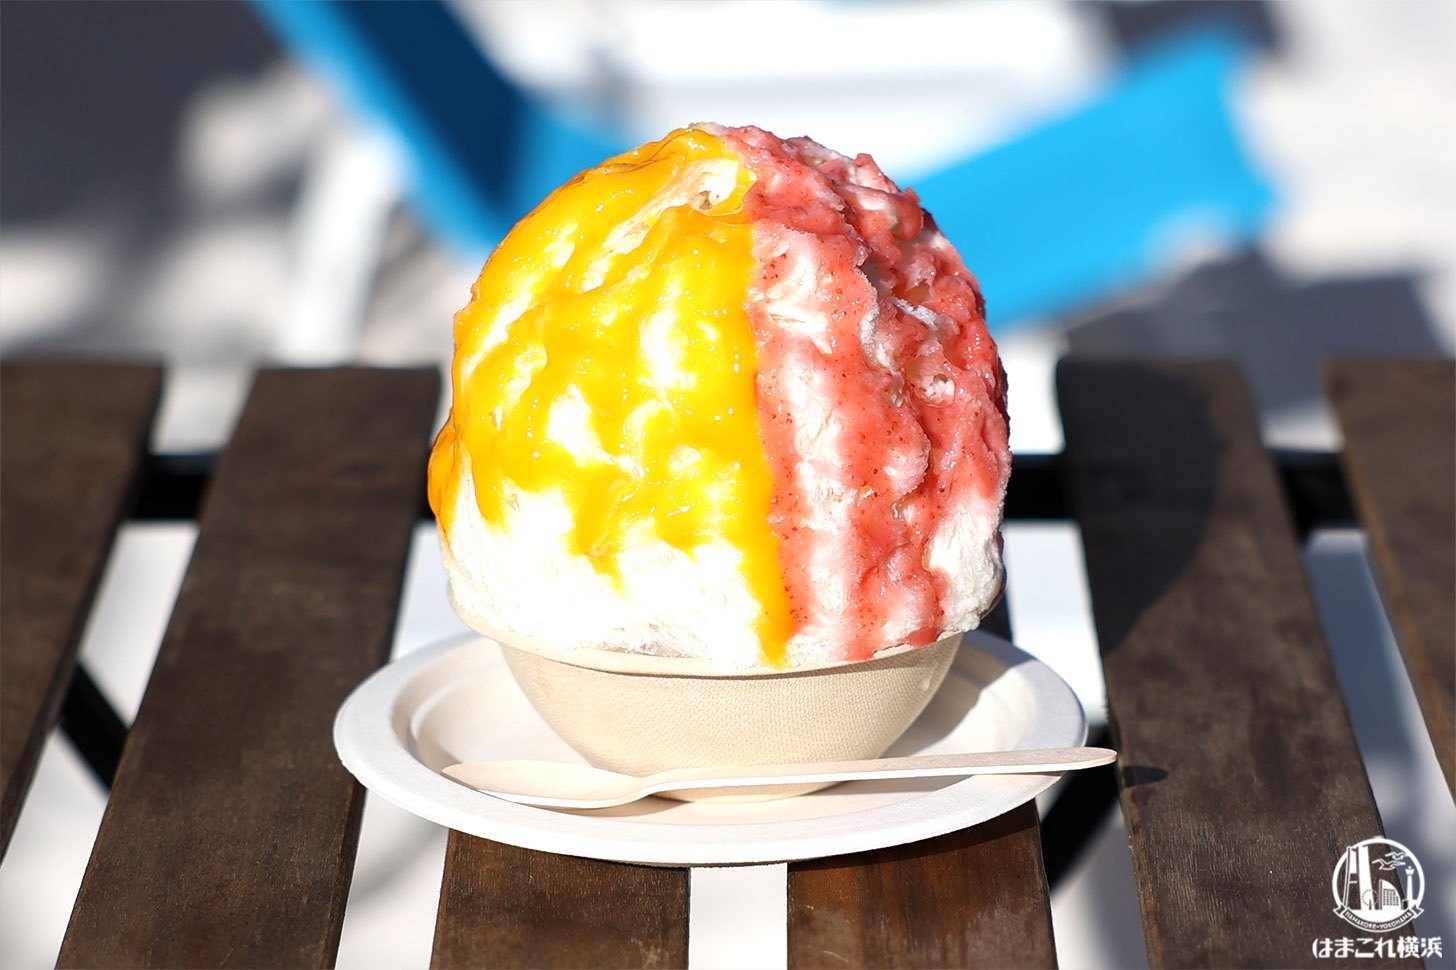 日光天然氷のかき氷「生いちごとマンゴー」1,400円